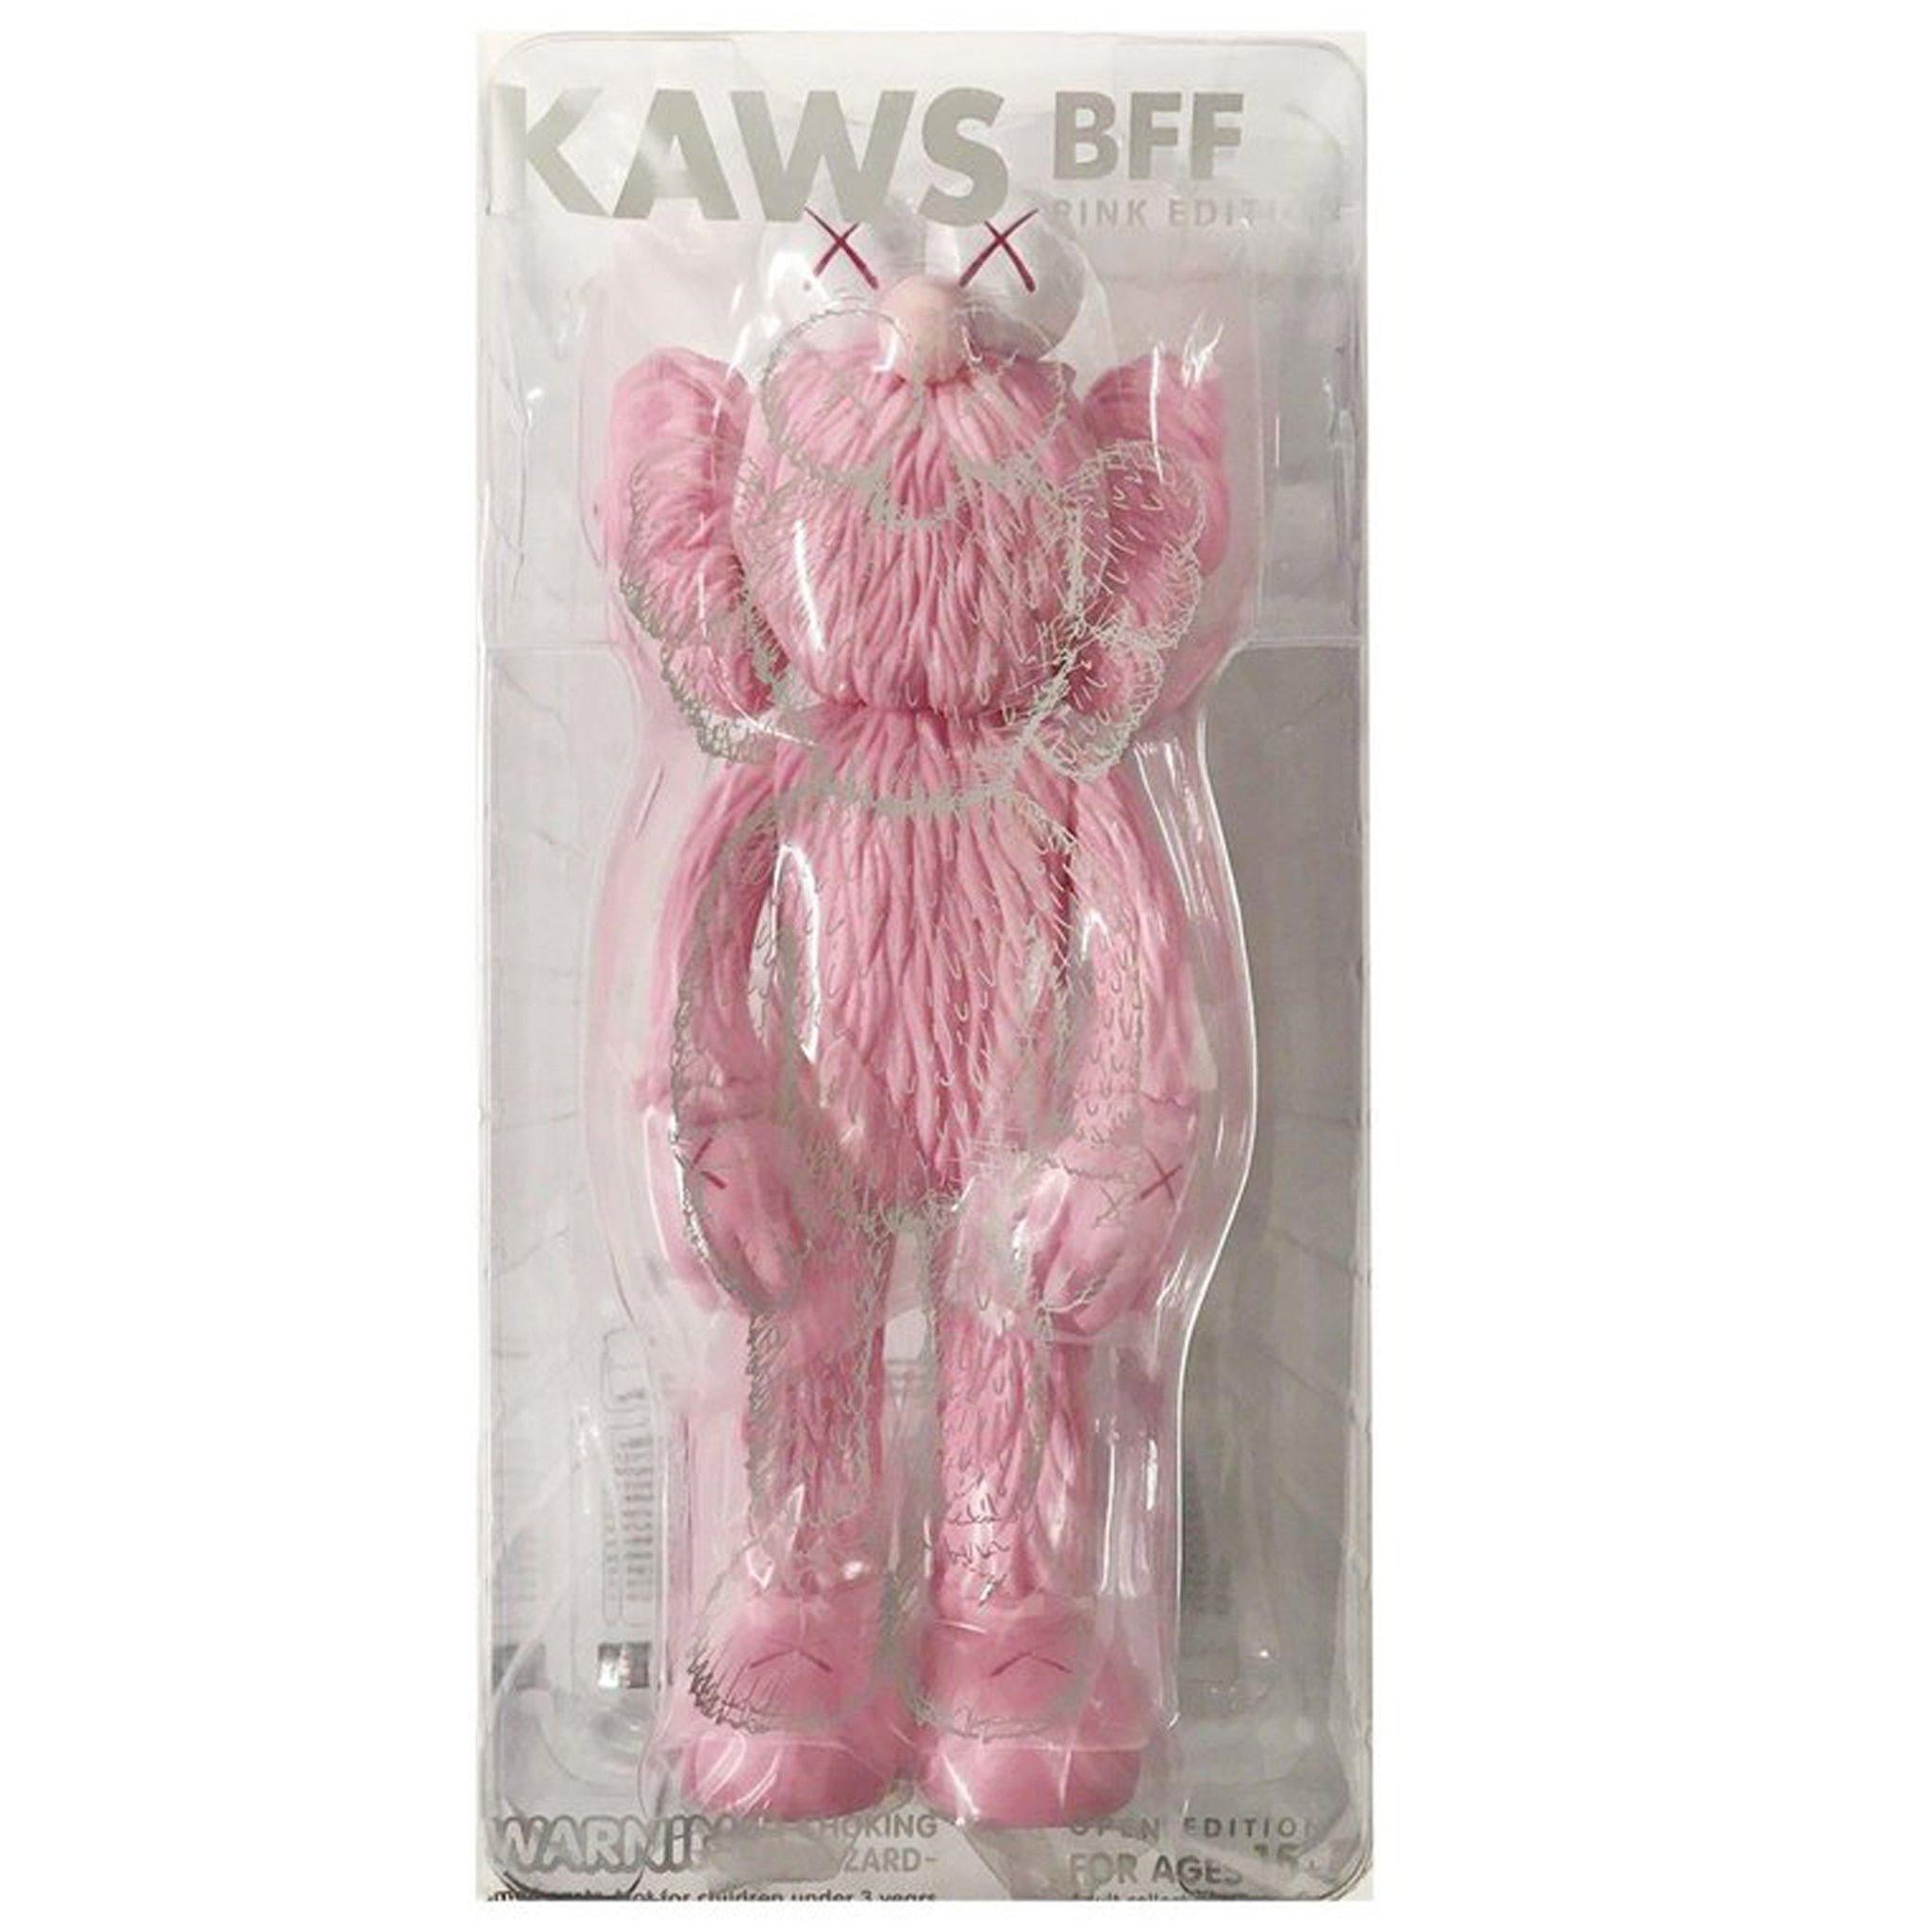 KAWS: BFF (Pink) - Original Vinyl Sculpture, Street art, Pop Art. MOMA 1